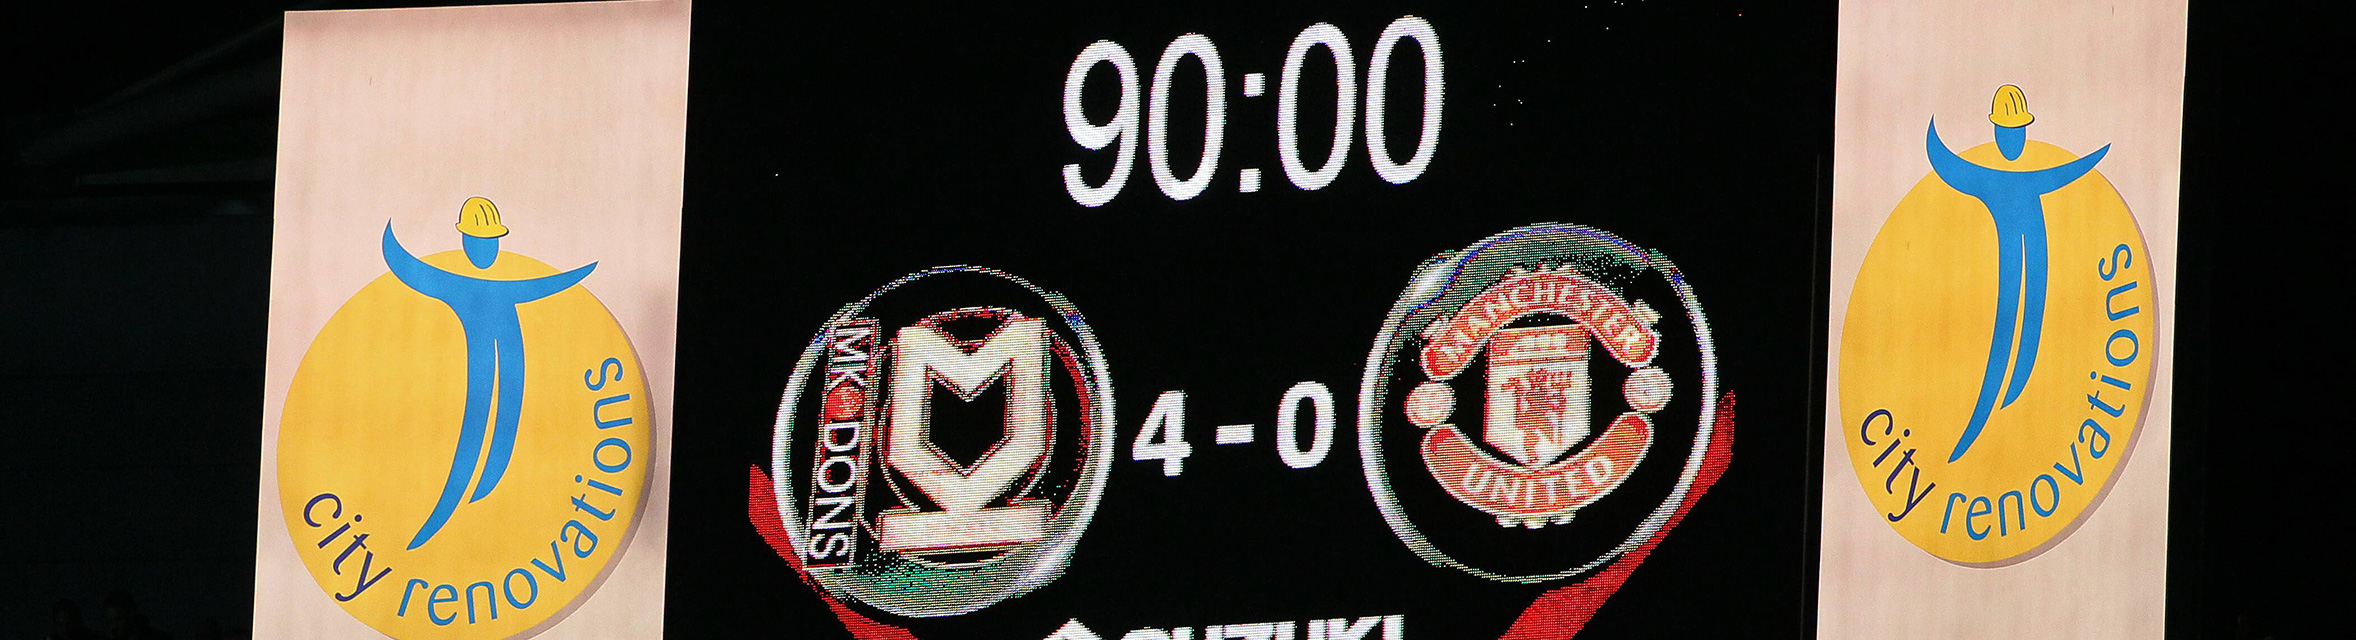 Het staat er echt: MK Dons - Manchester United 4-0.